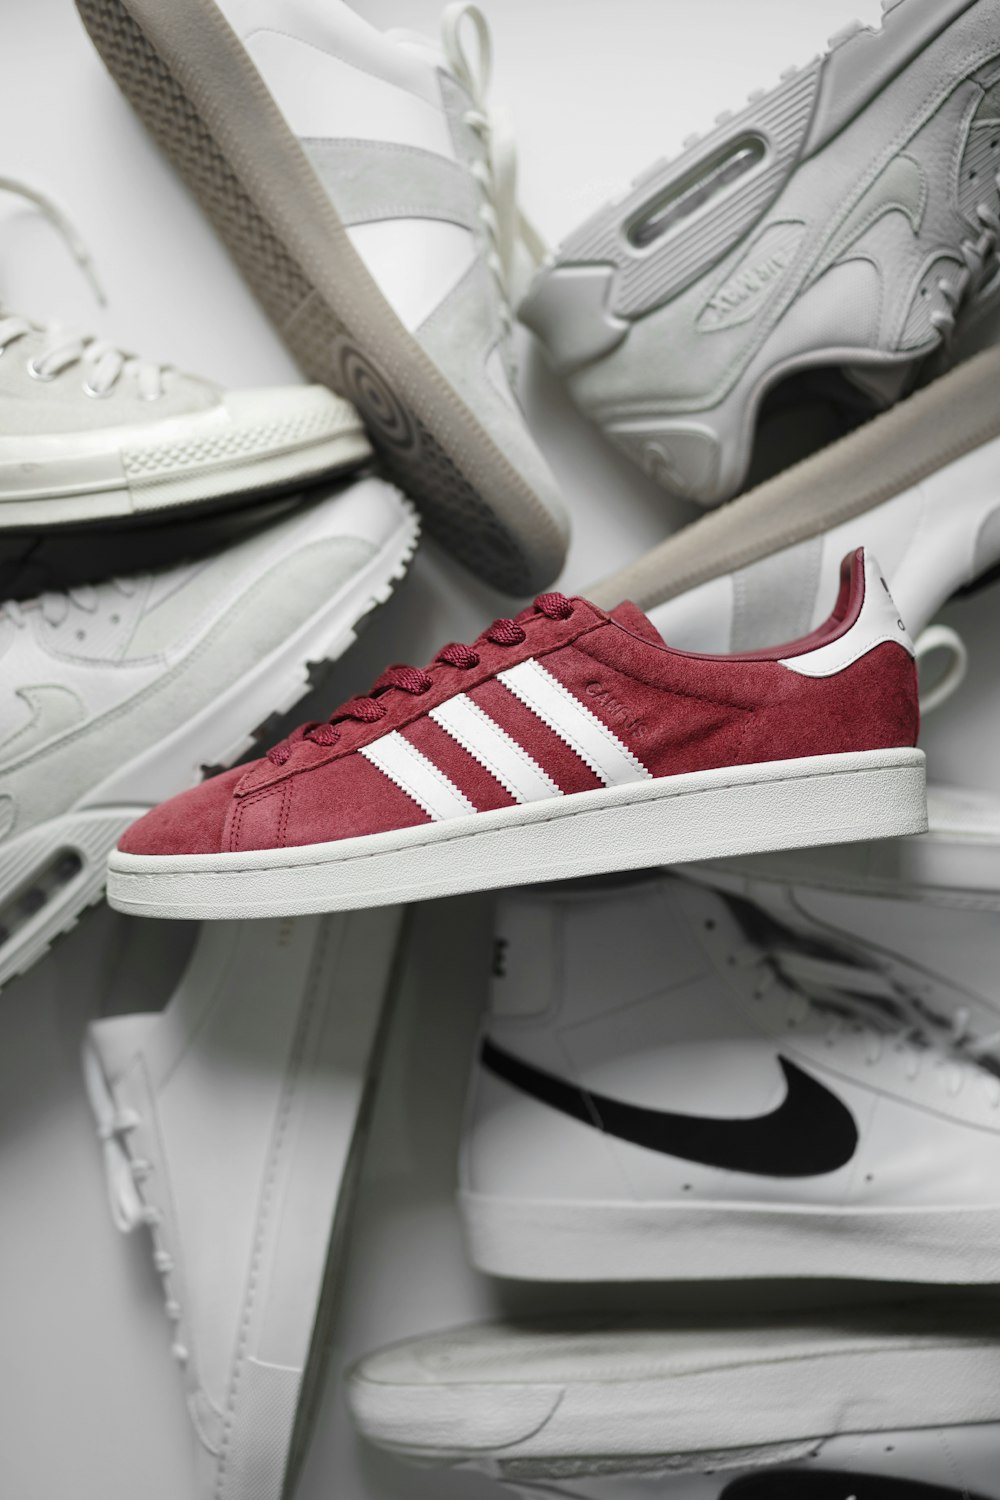 Foto zapatillas bajas adidas rojas y blancas – Imagen Adidas gratis en  Unsplash